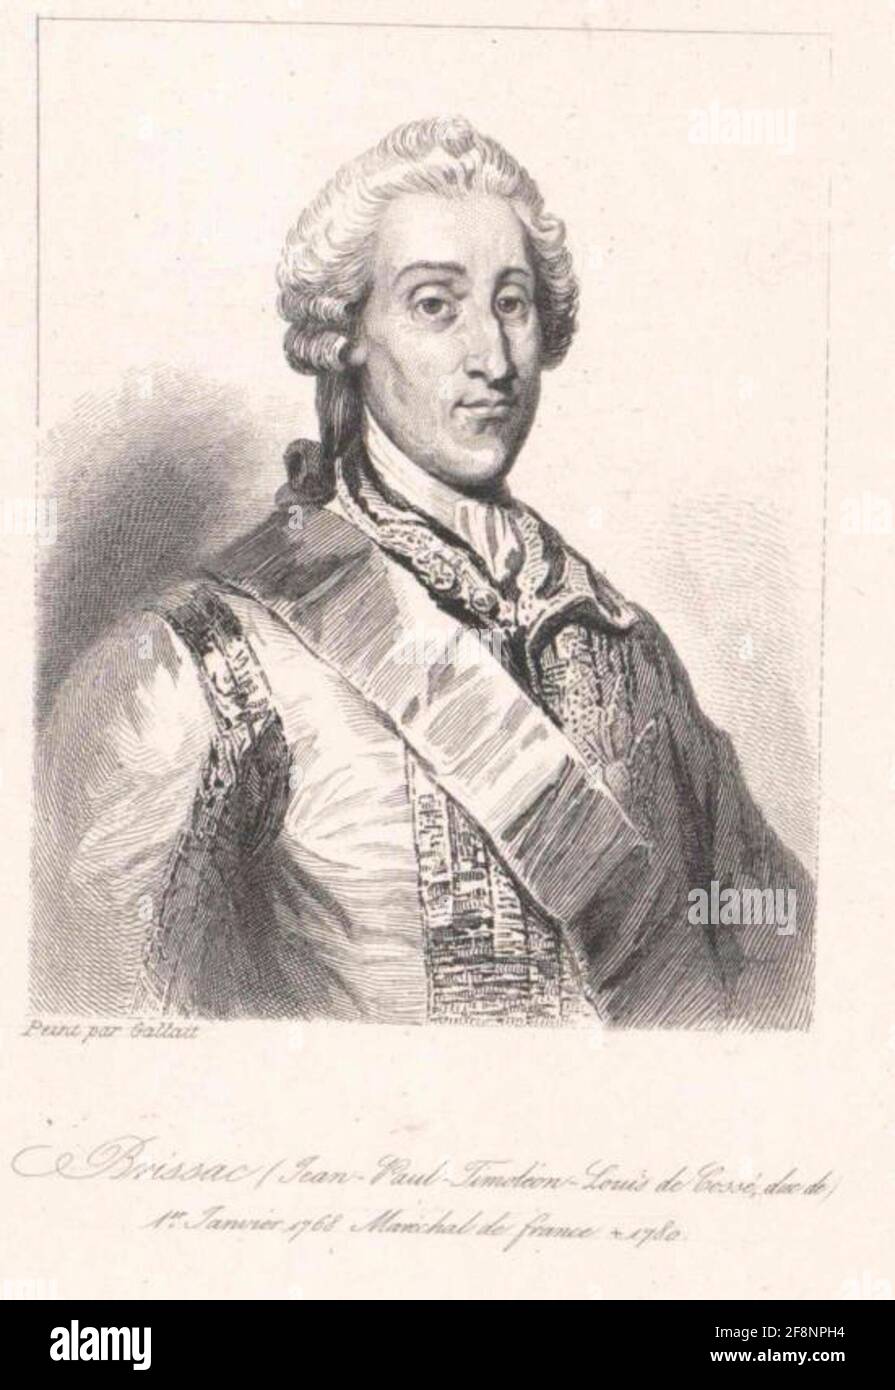 Cossé, Jean-Paul-Timoleon Duc de Brissac Stock Photo - Alamy